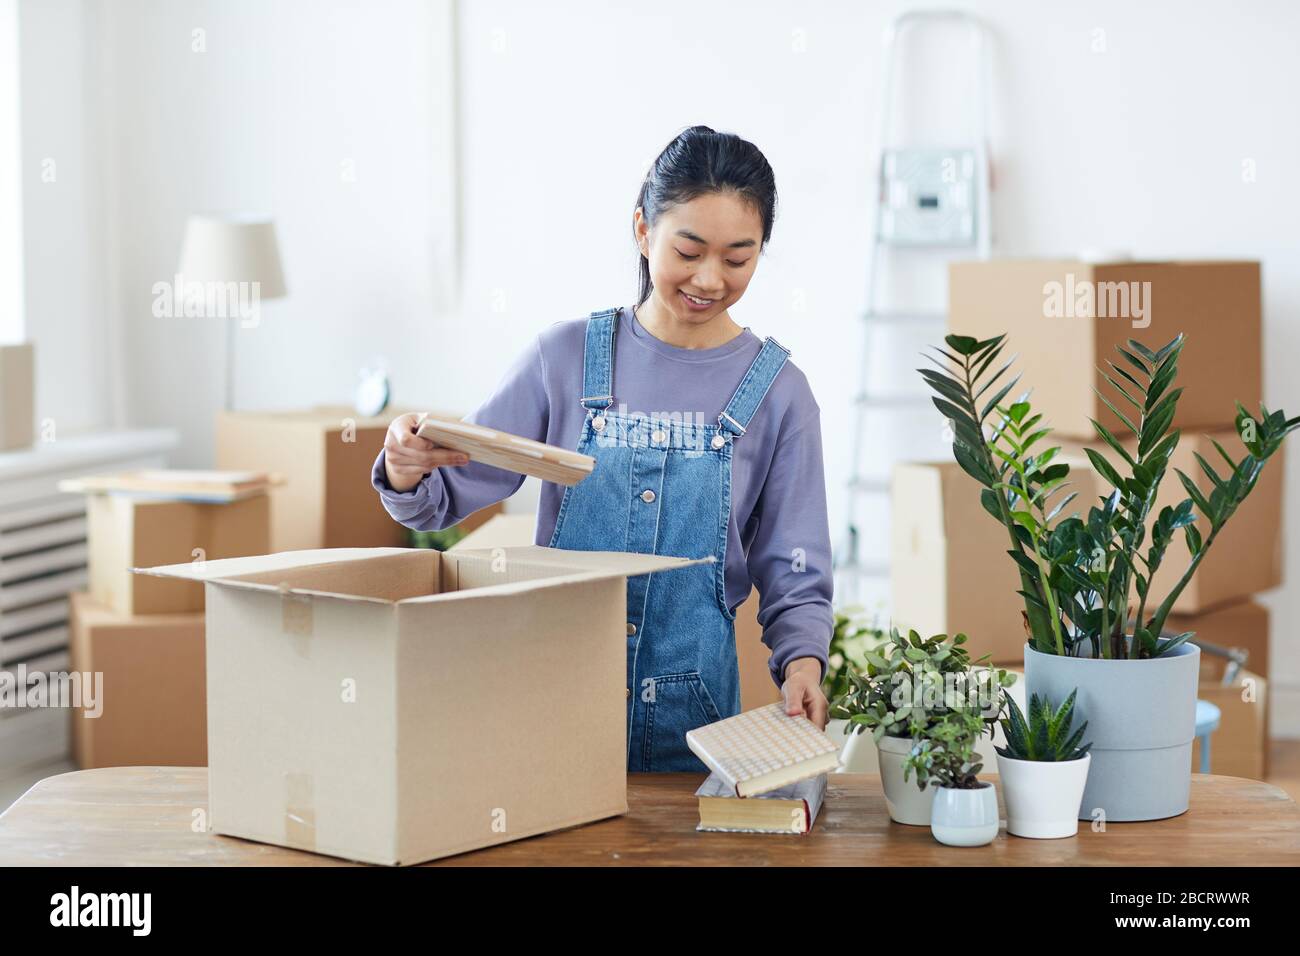 Taille hoch Portrait der jungen asiatischen Frau Packen oder Auspacken von Pappkarton und lächeln glücklich, während sie in neues Zuhause, Kopierraum, ziehen Stockfoto